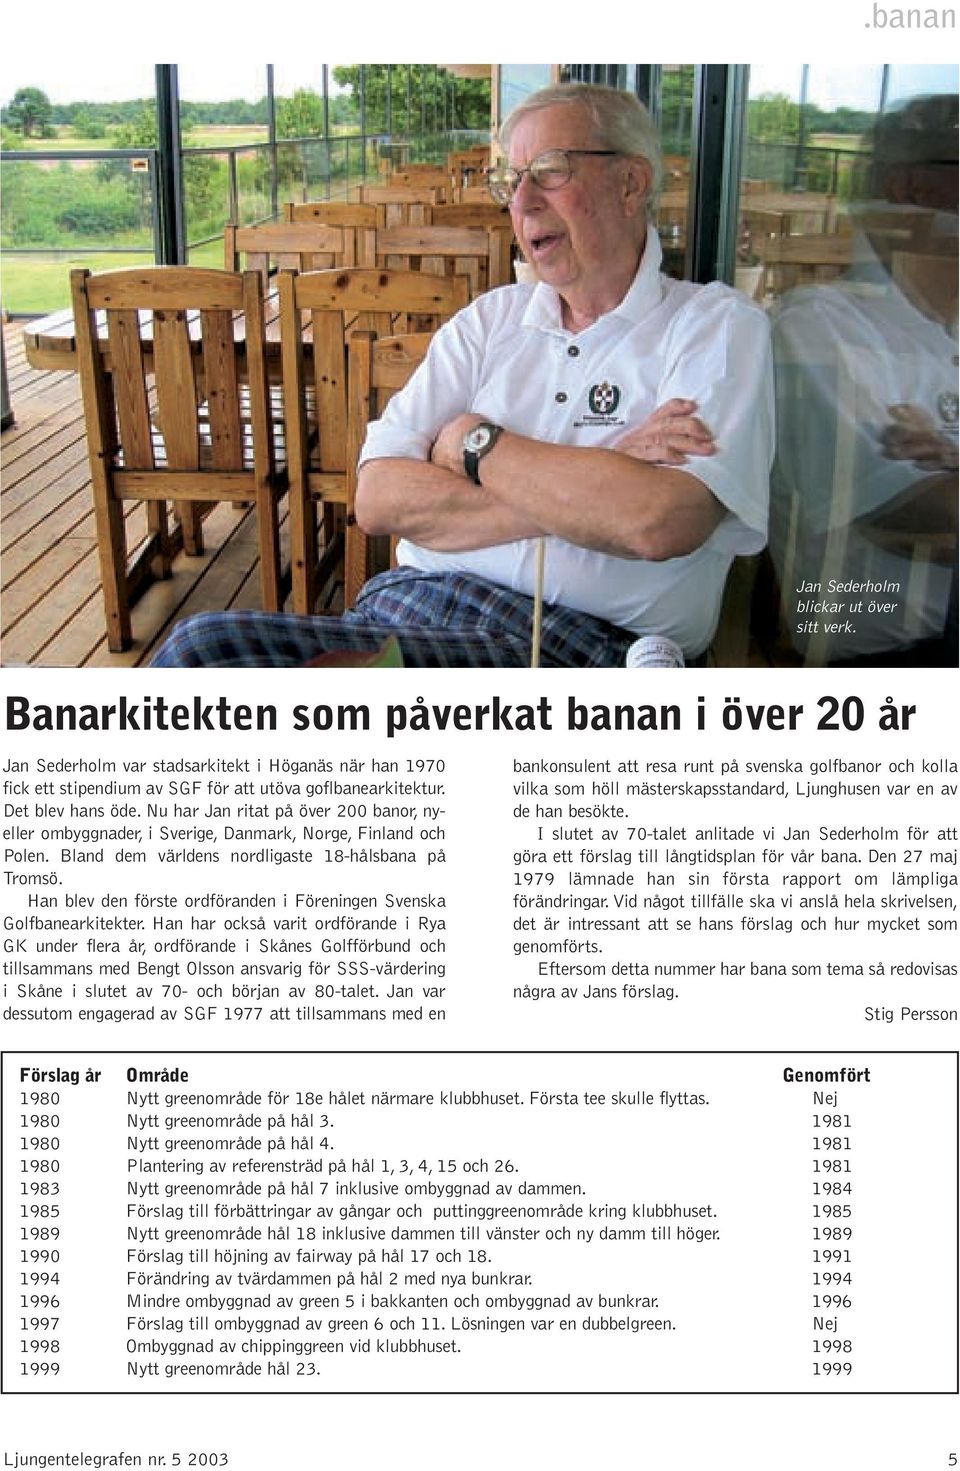 Nu har Jan ritat på över 200 banor, nyeller ombyggnader, i Sverige, Danmark, Norge, Finland och Polen. Bland dem världens nordligaste 18-hålsbana på Tromsö.